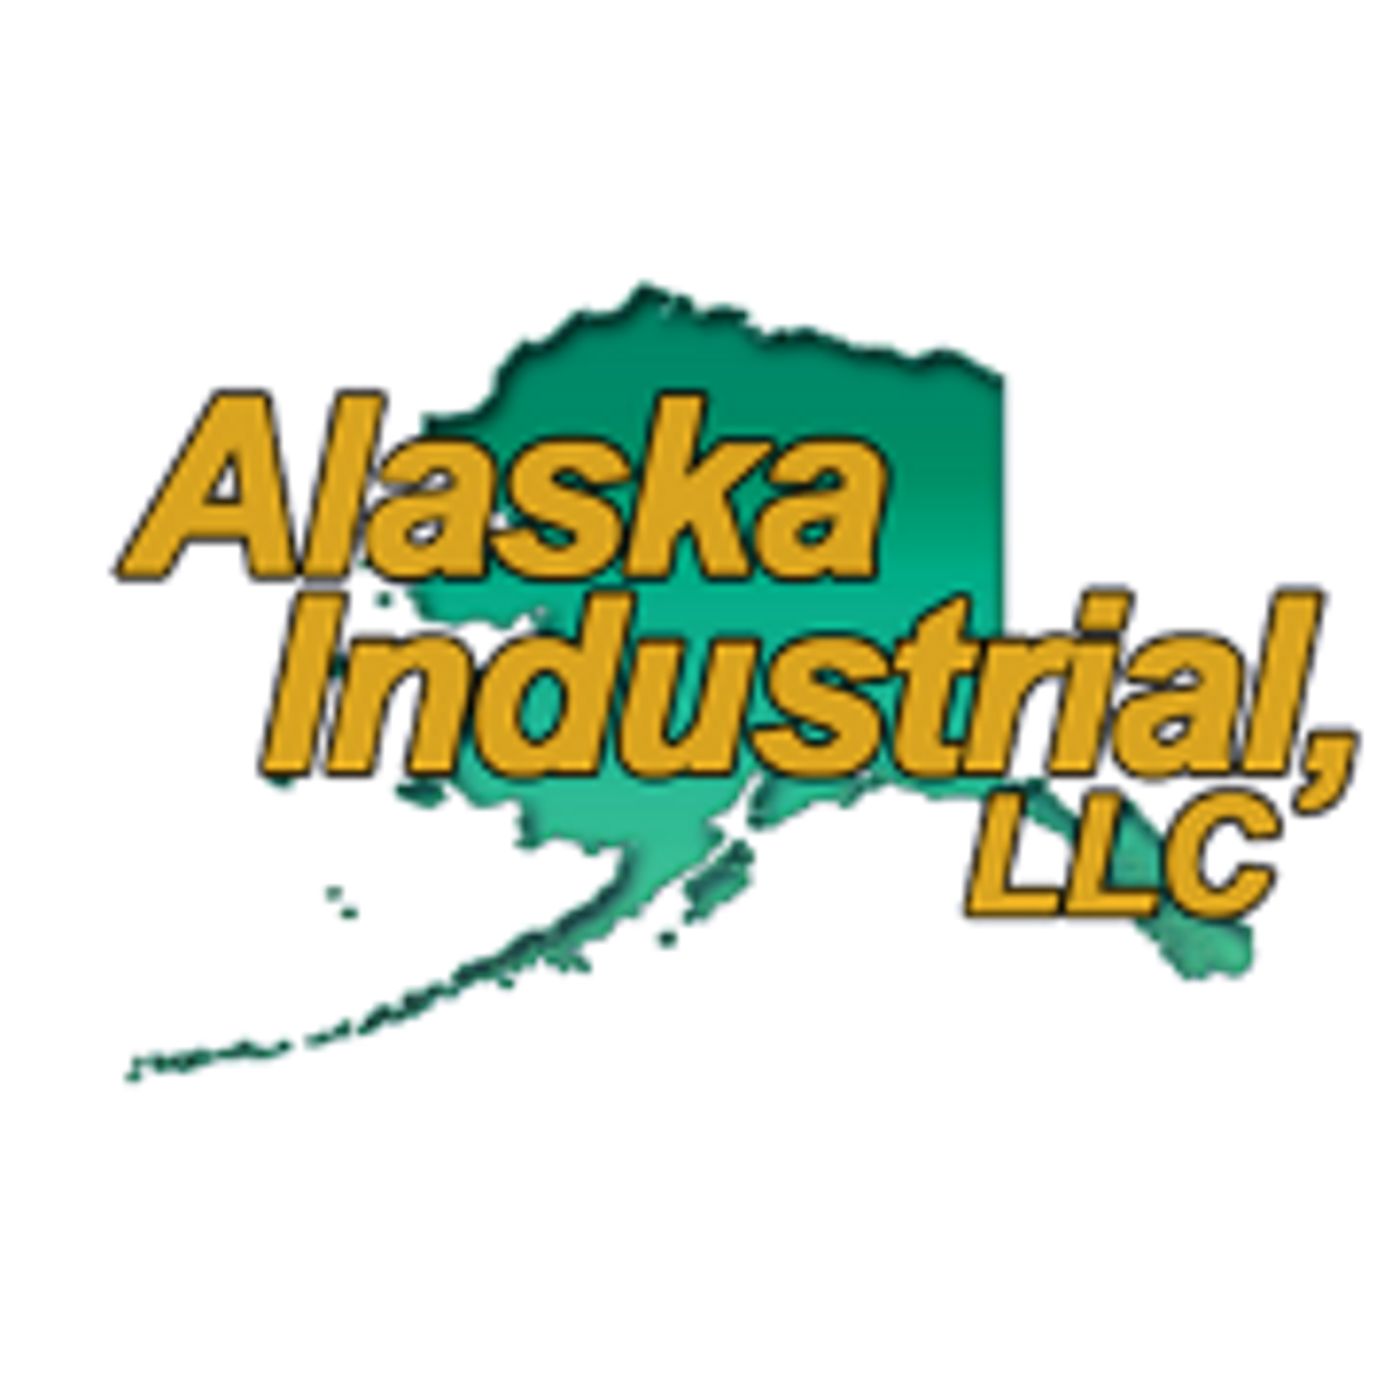 Alaska Industrial